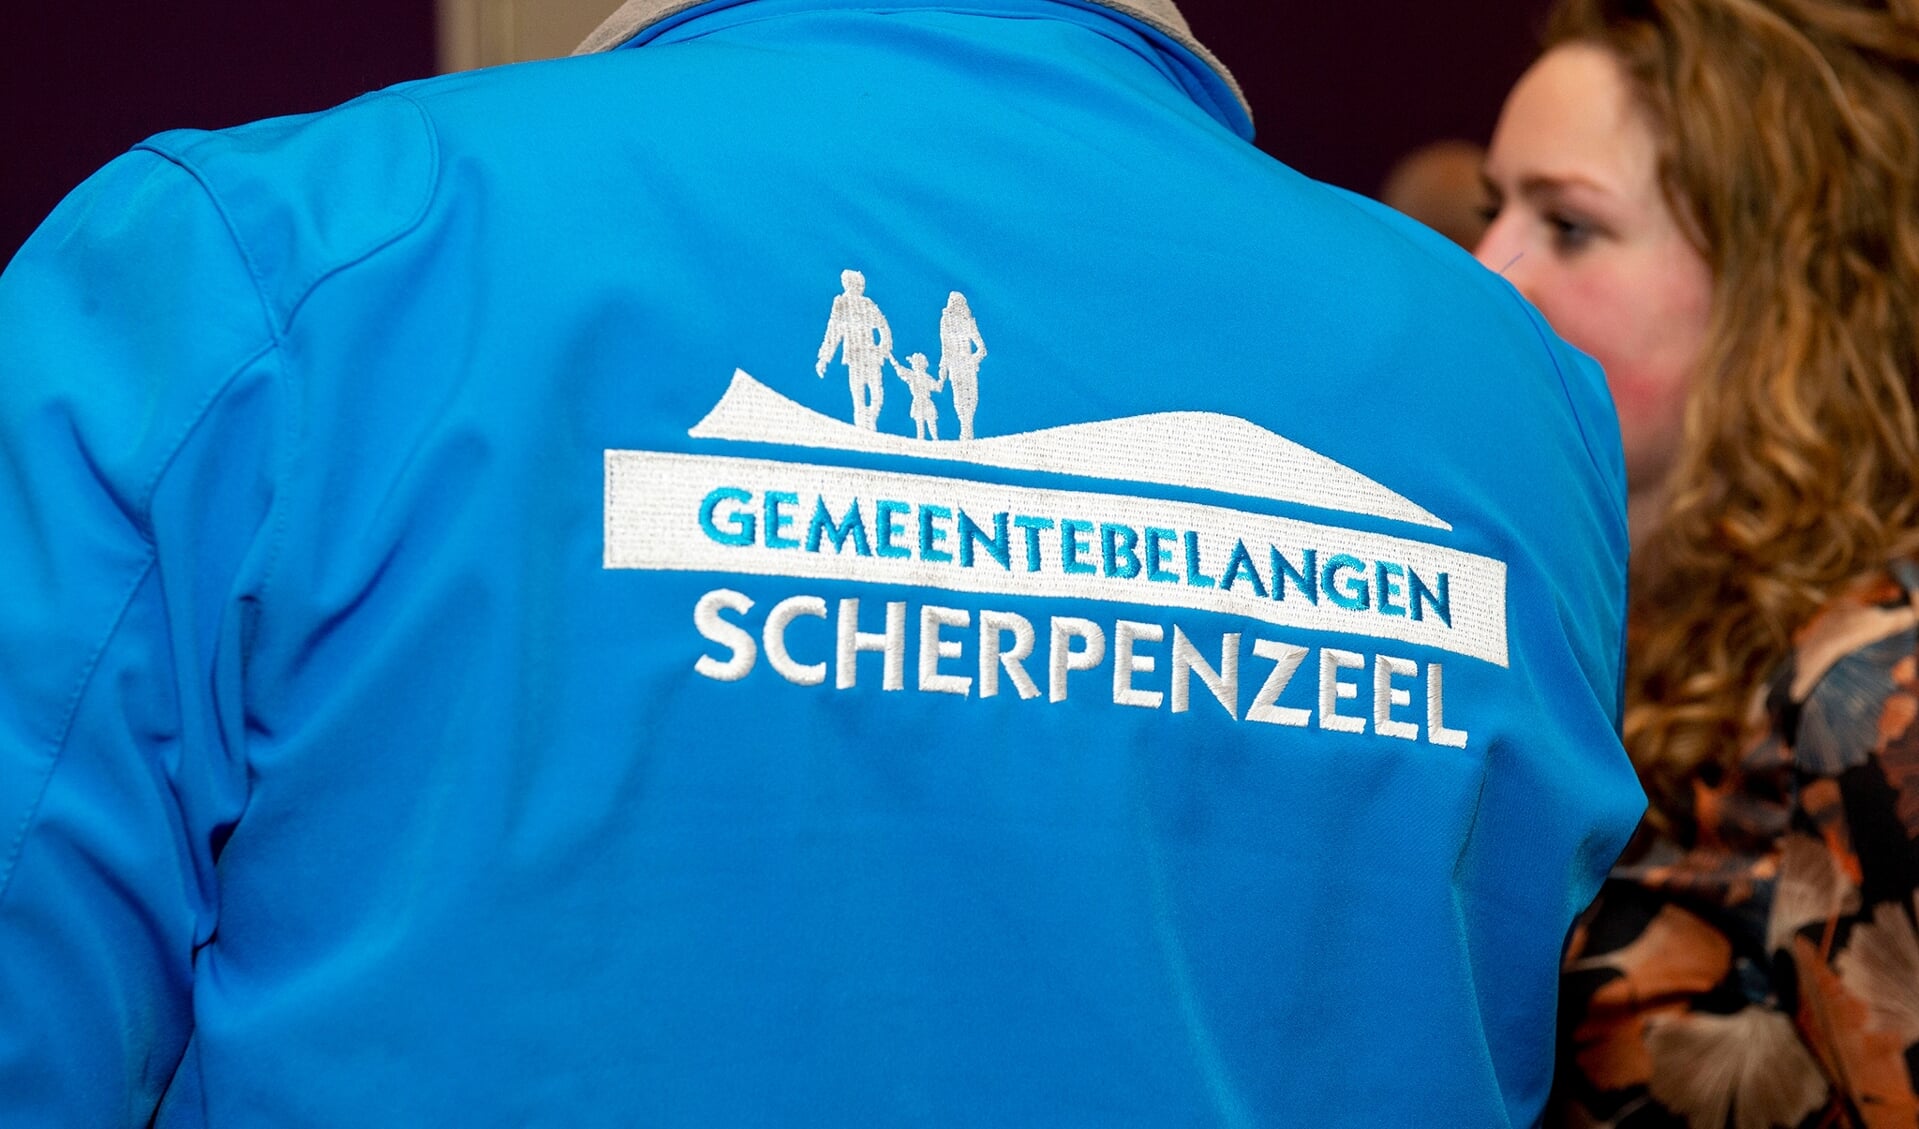 GemeenteBelangen Scherpenzeel en huidige coalitiepartner SGP gaan met elkaar in gesprek om te komen nieuwe coalitie. 